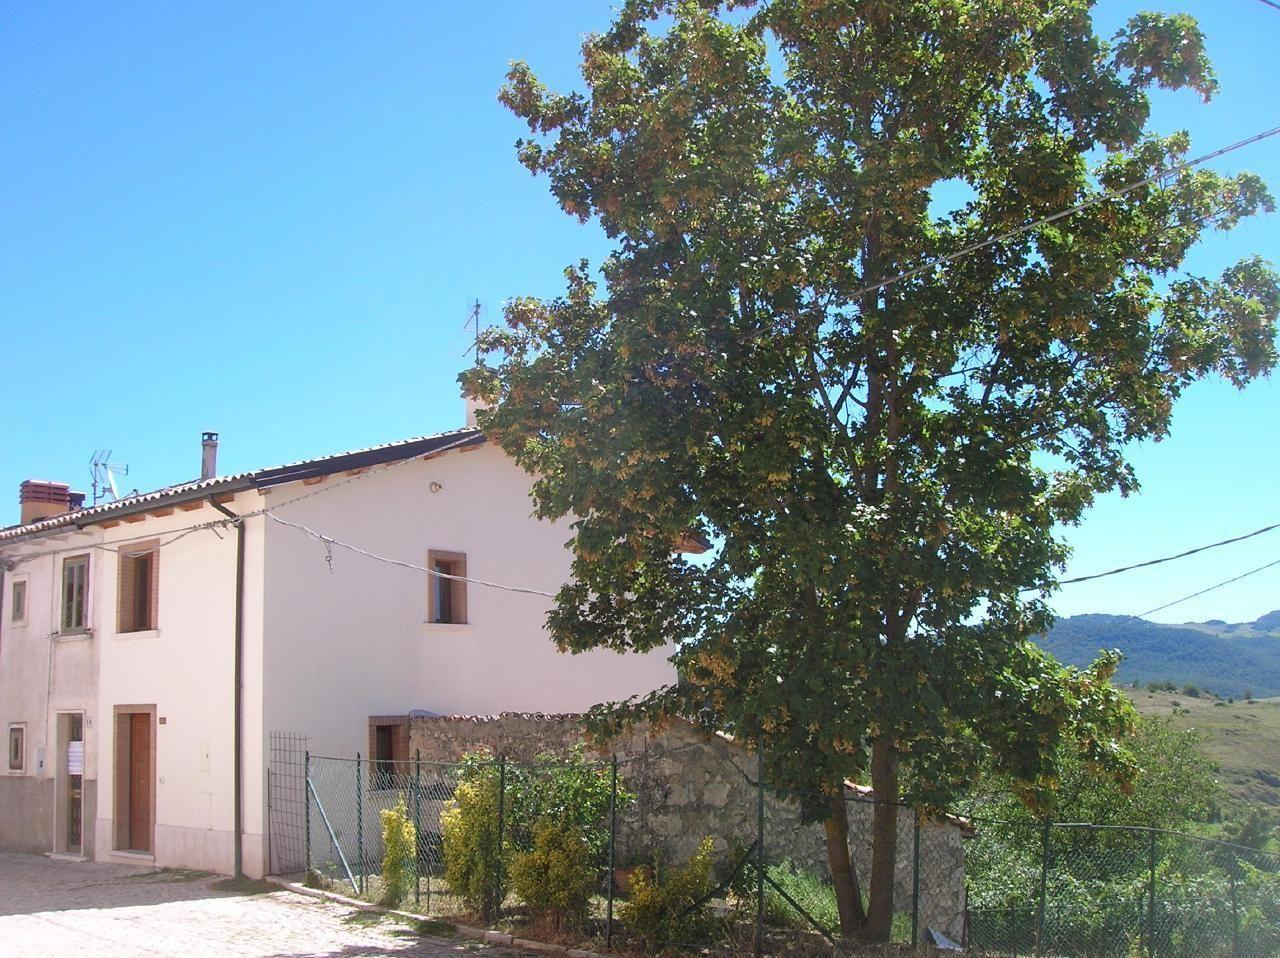 Ferienhaus in Roccacinquemiglia mit Grill   L Aquila